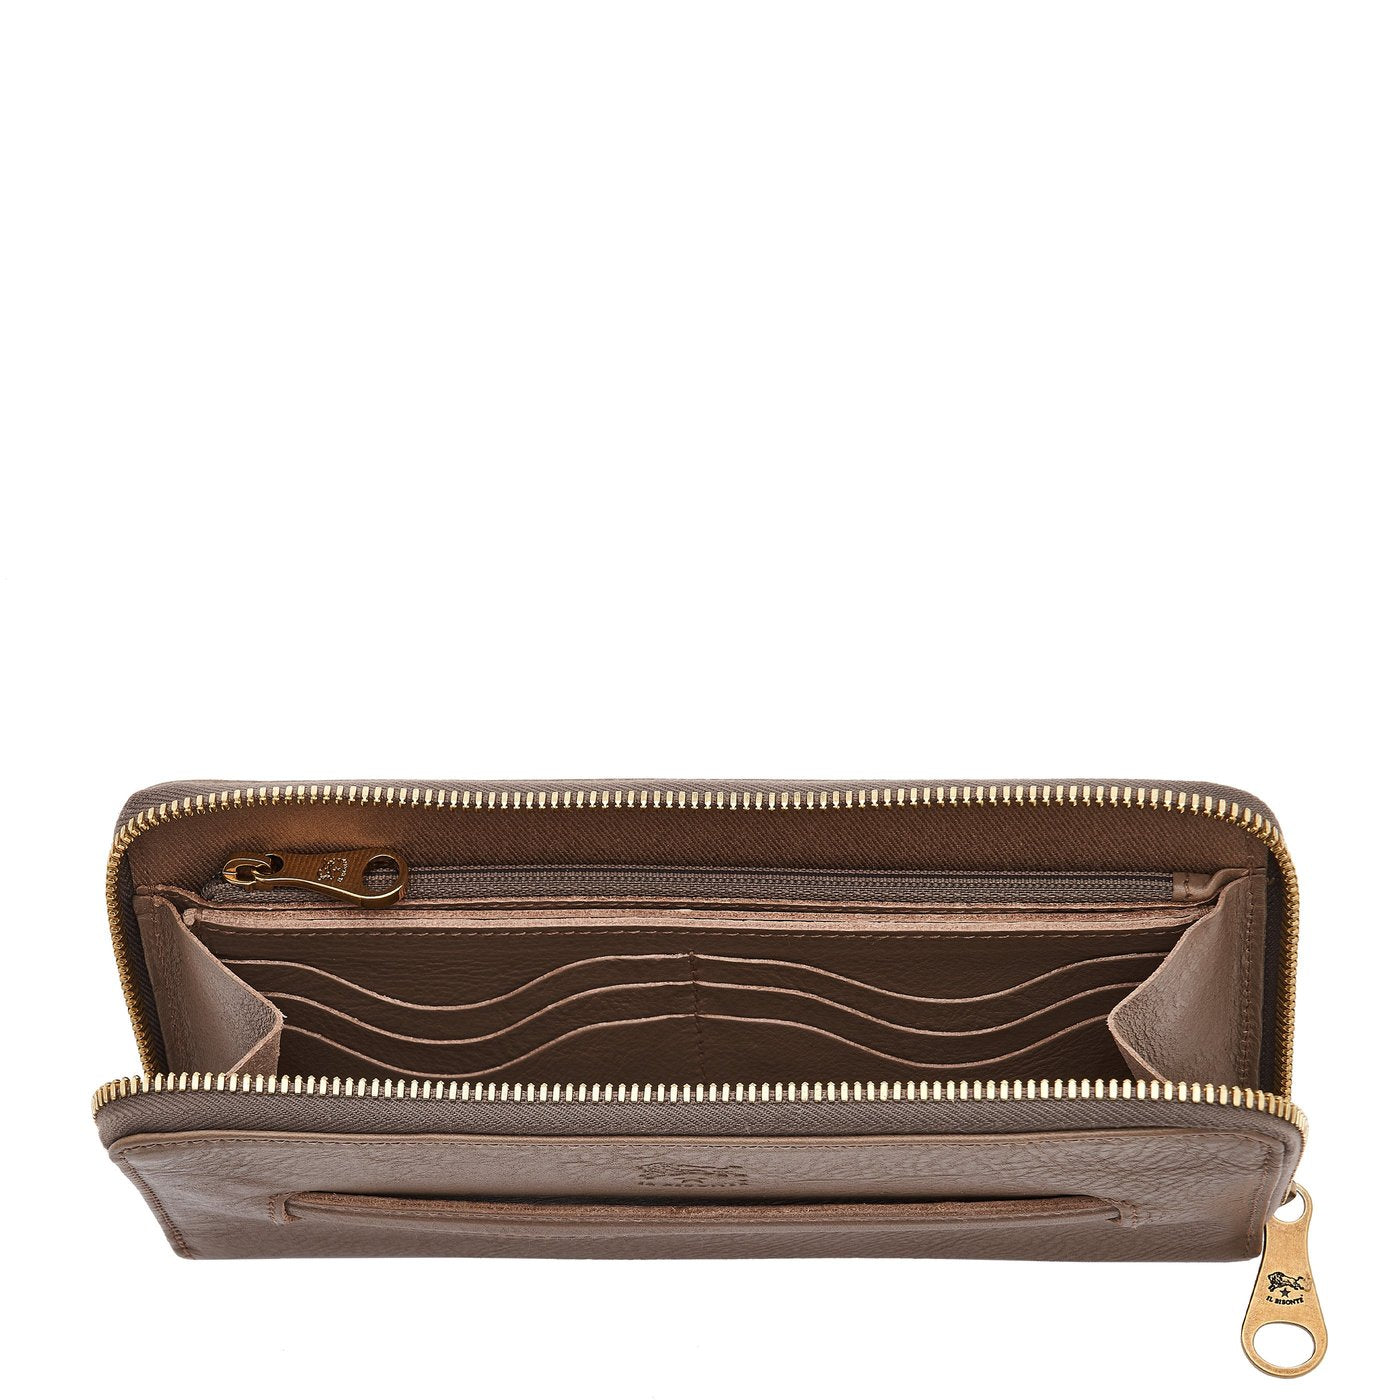 RFID Genuine Leather Zipper Wallet for Women|Long Wallet-EZLIFEGOODS